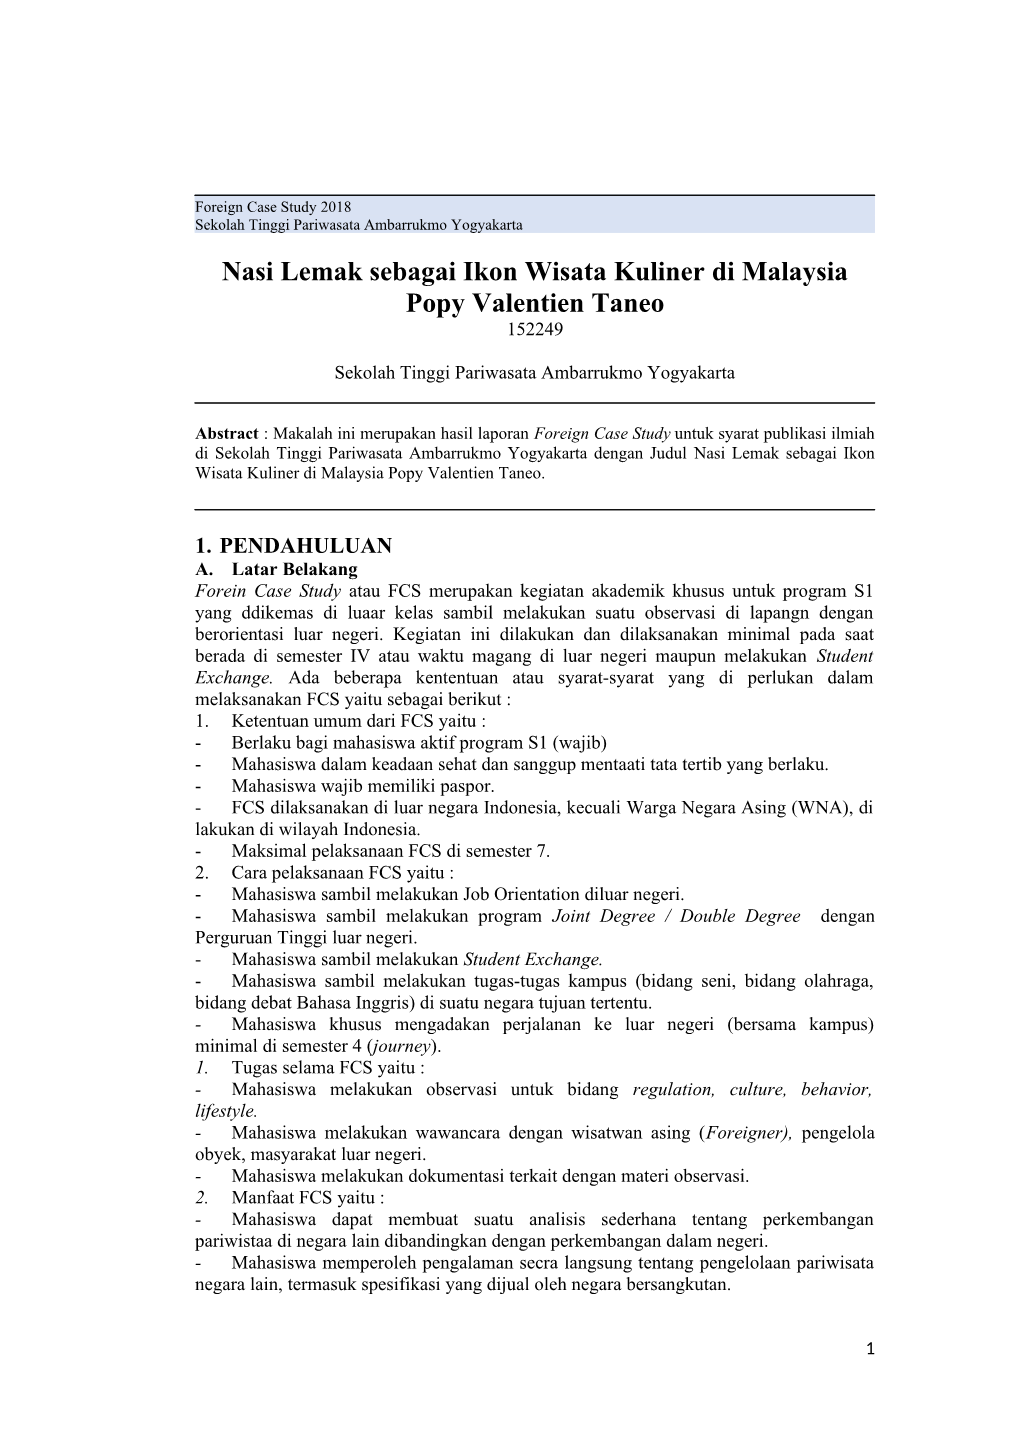 Nasi Lemak Sebagai Ikon Wisata Kuliner Di Malaysia Popy Valentien Taneo 152249